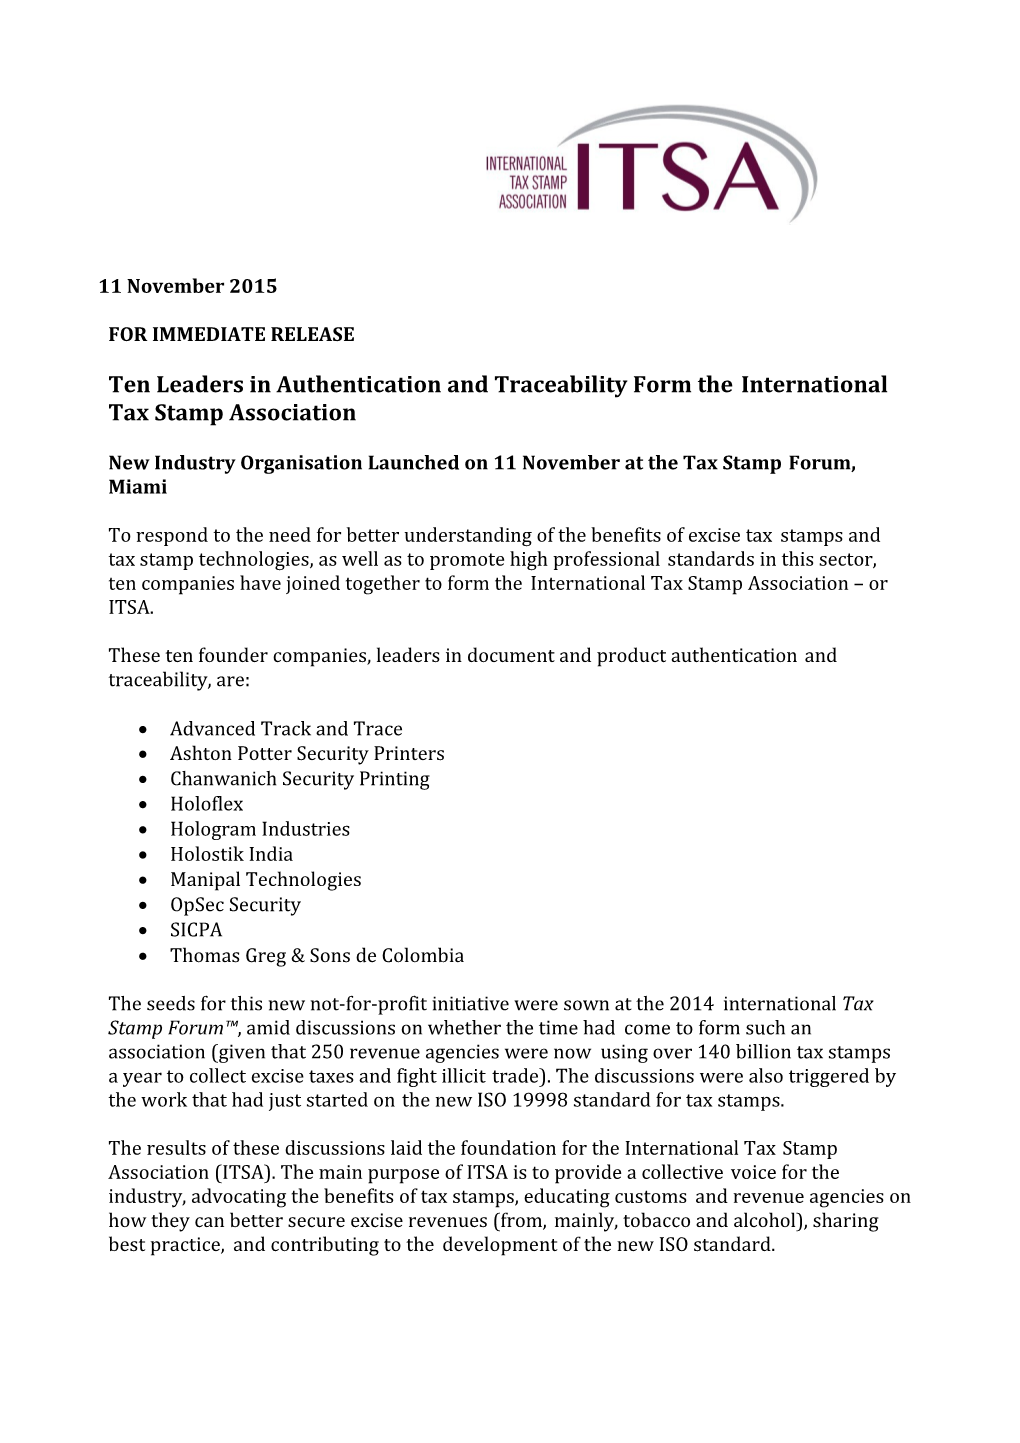 ITSA Press Release Rev